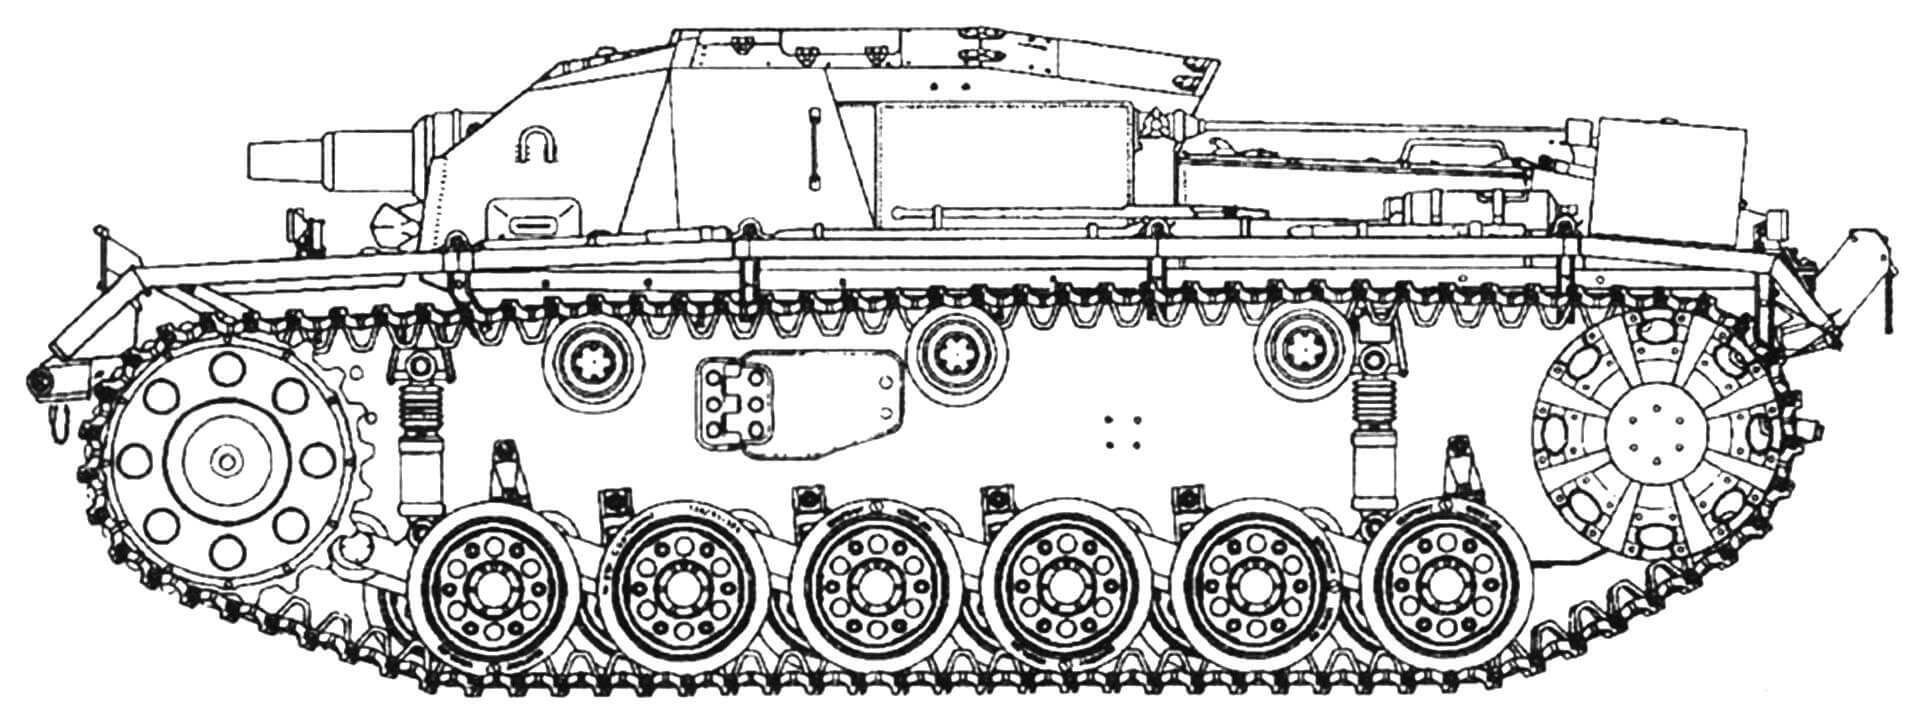 StuG III Ausf. В (первые 8 машин)